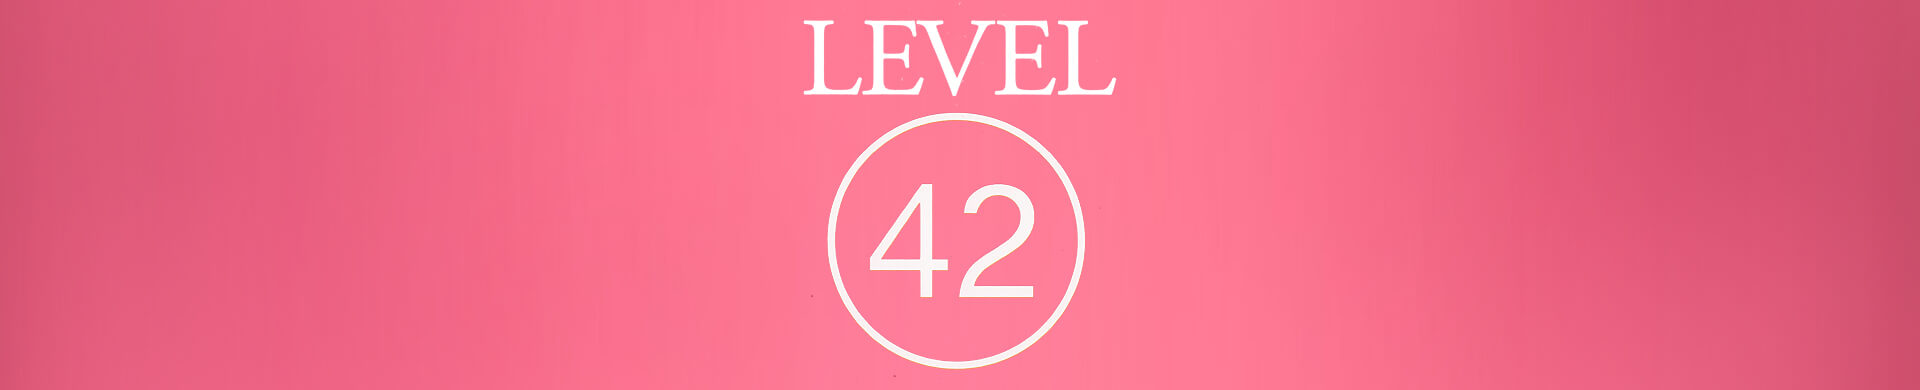 <p>LEVEL 42</p>
